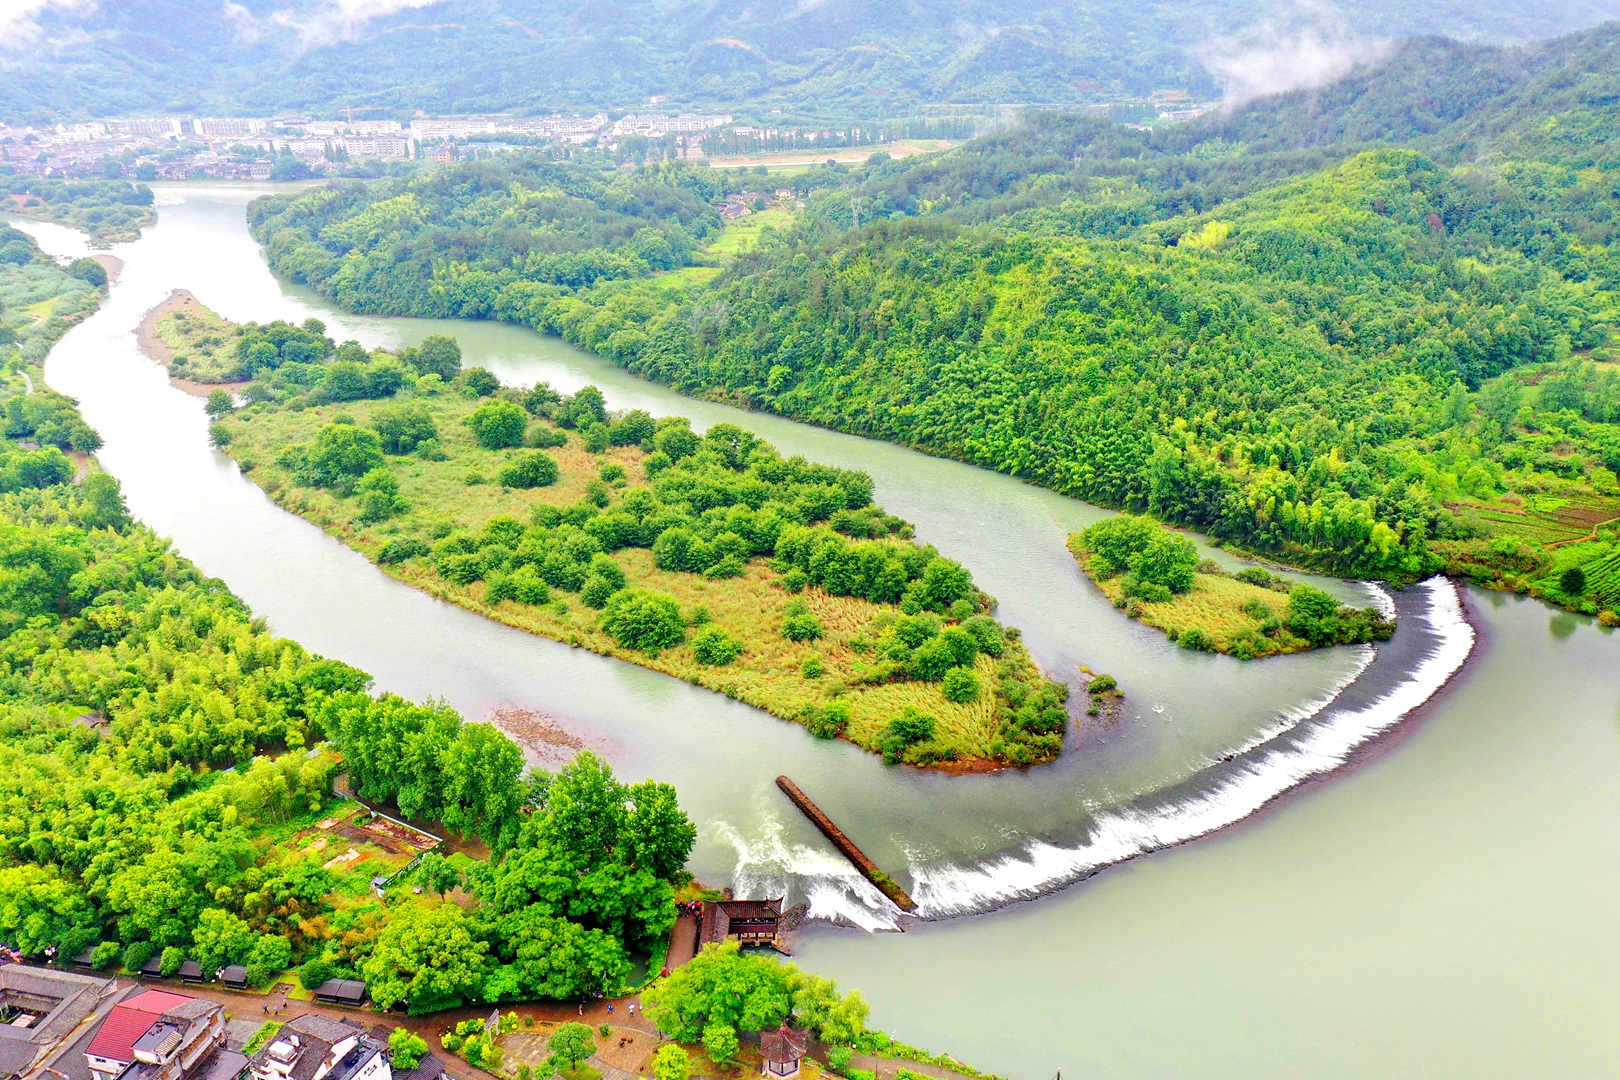 Oujiang River in Lishui City, Zhejiang Province, east China, June 18, 2022. /CFP